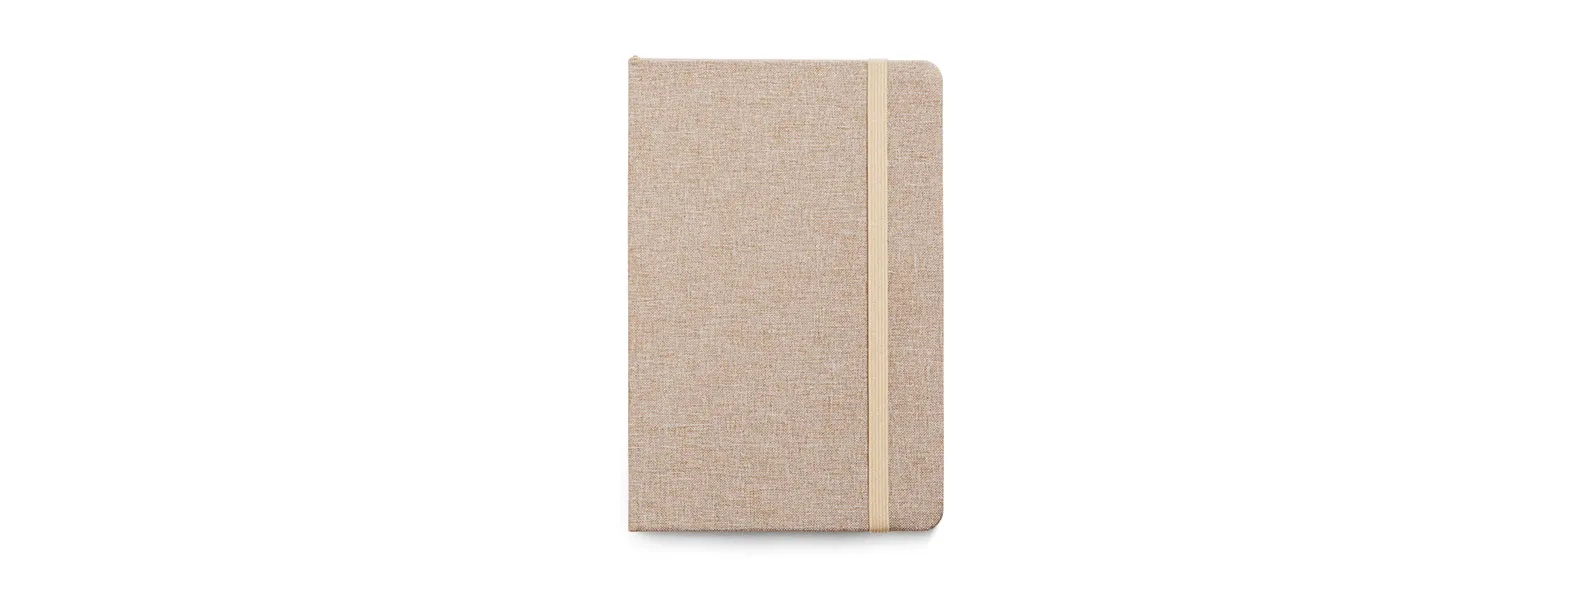 Caderno para anotações com capa dura revestida de Poliéster bege. Conta com 80 folhas pautadas, marca página e elástico para fechamento. Gramatura da folha de 70 g/m2